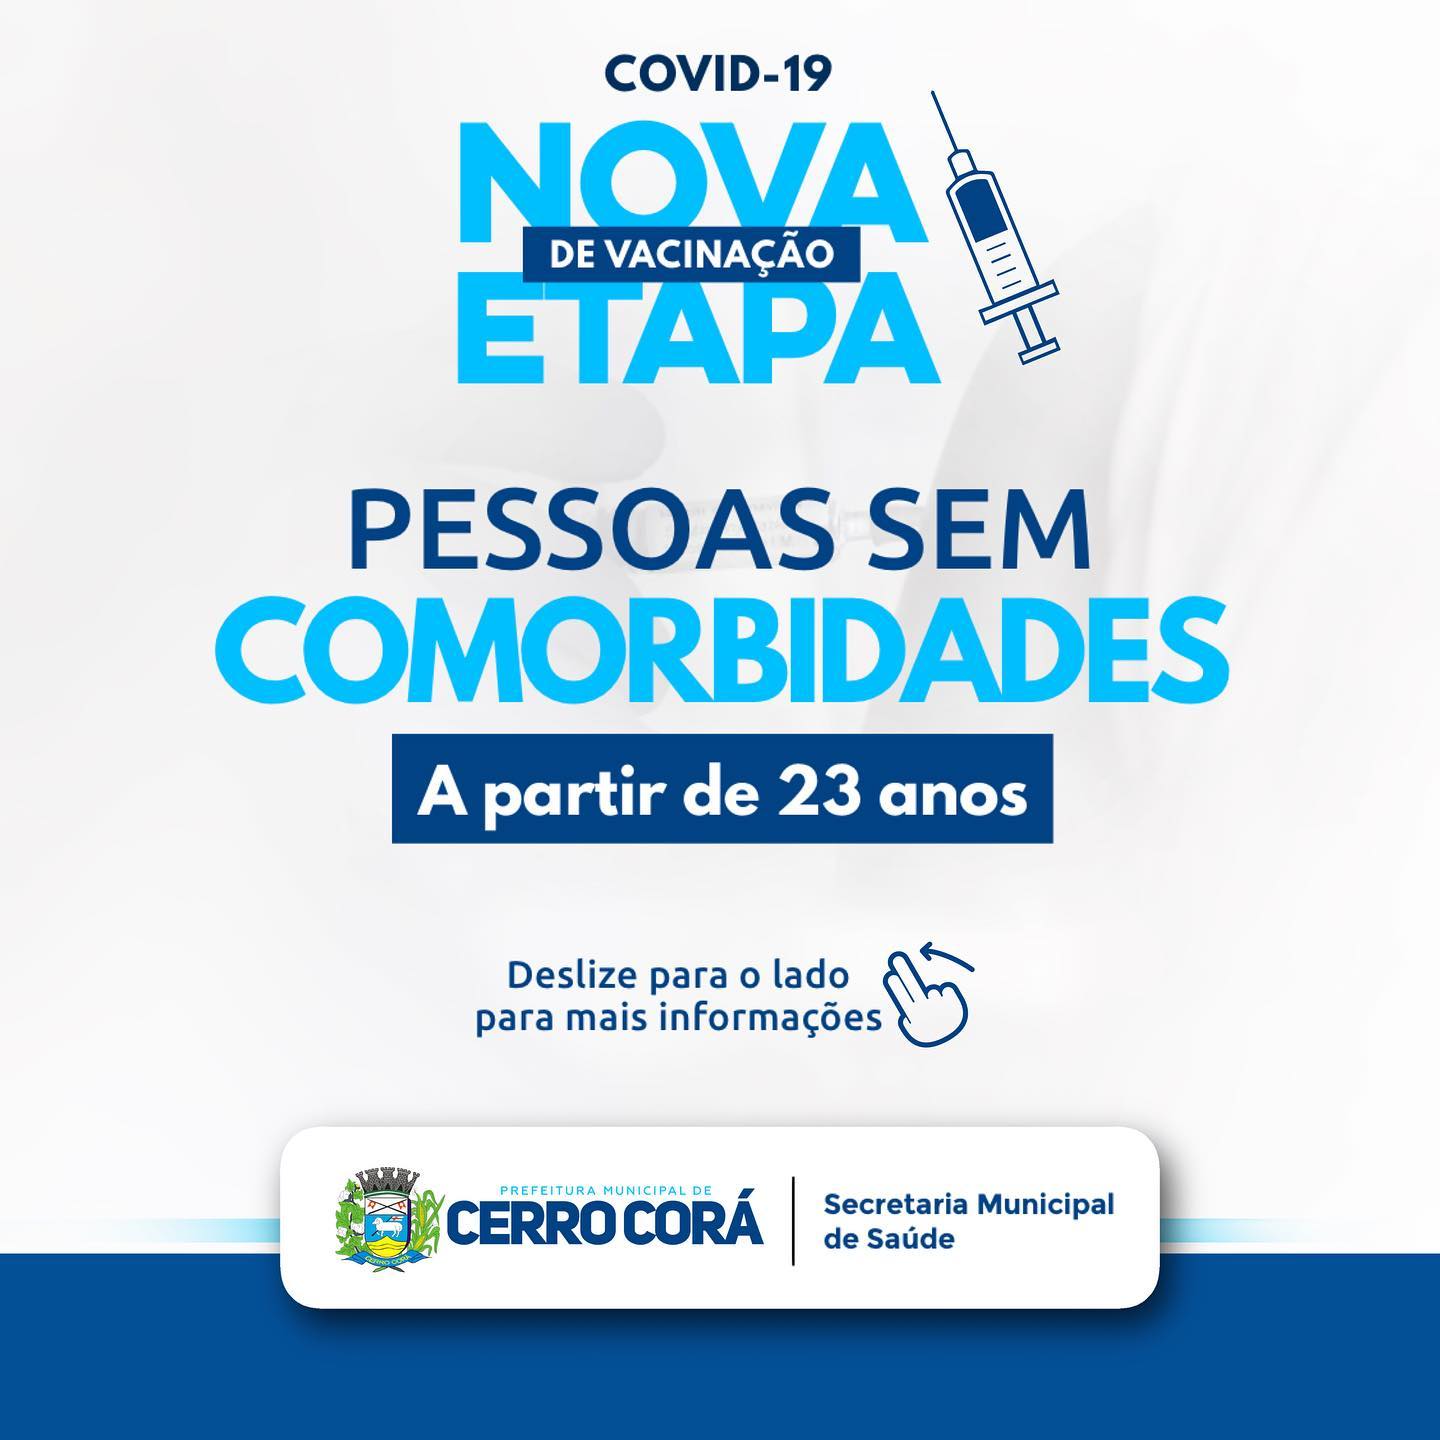 Cerro Corá: Secretaria de Saúde divulga nova faixa etária de vacinação contra a Covid-19, 23 anos